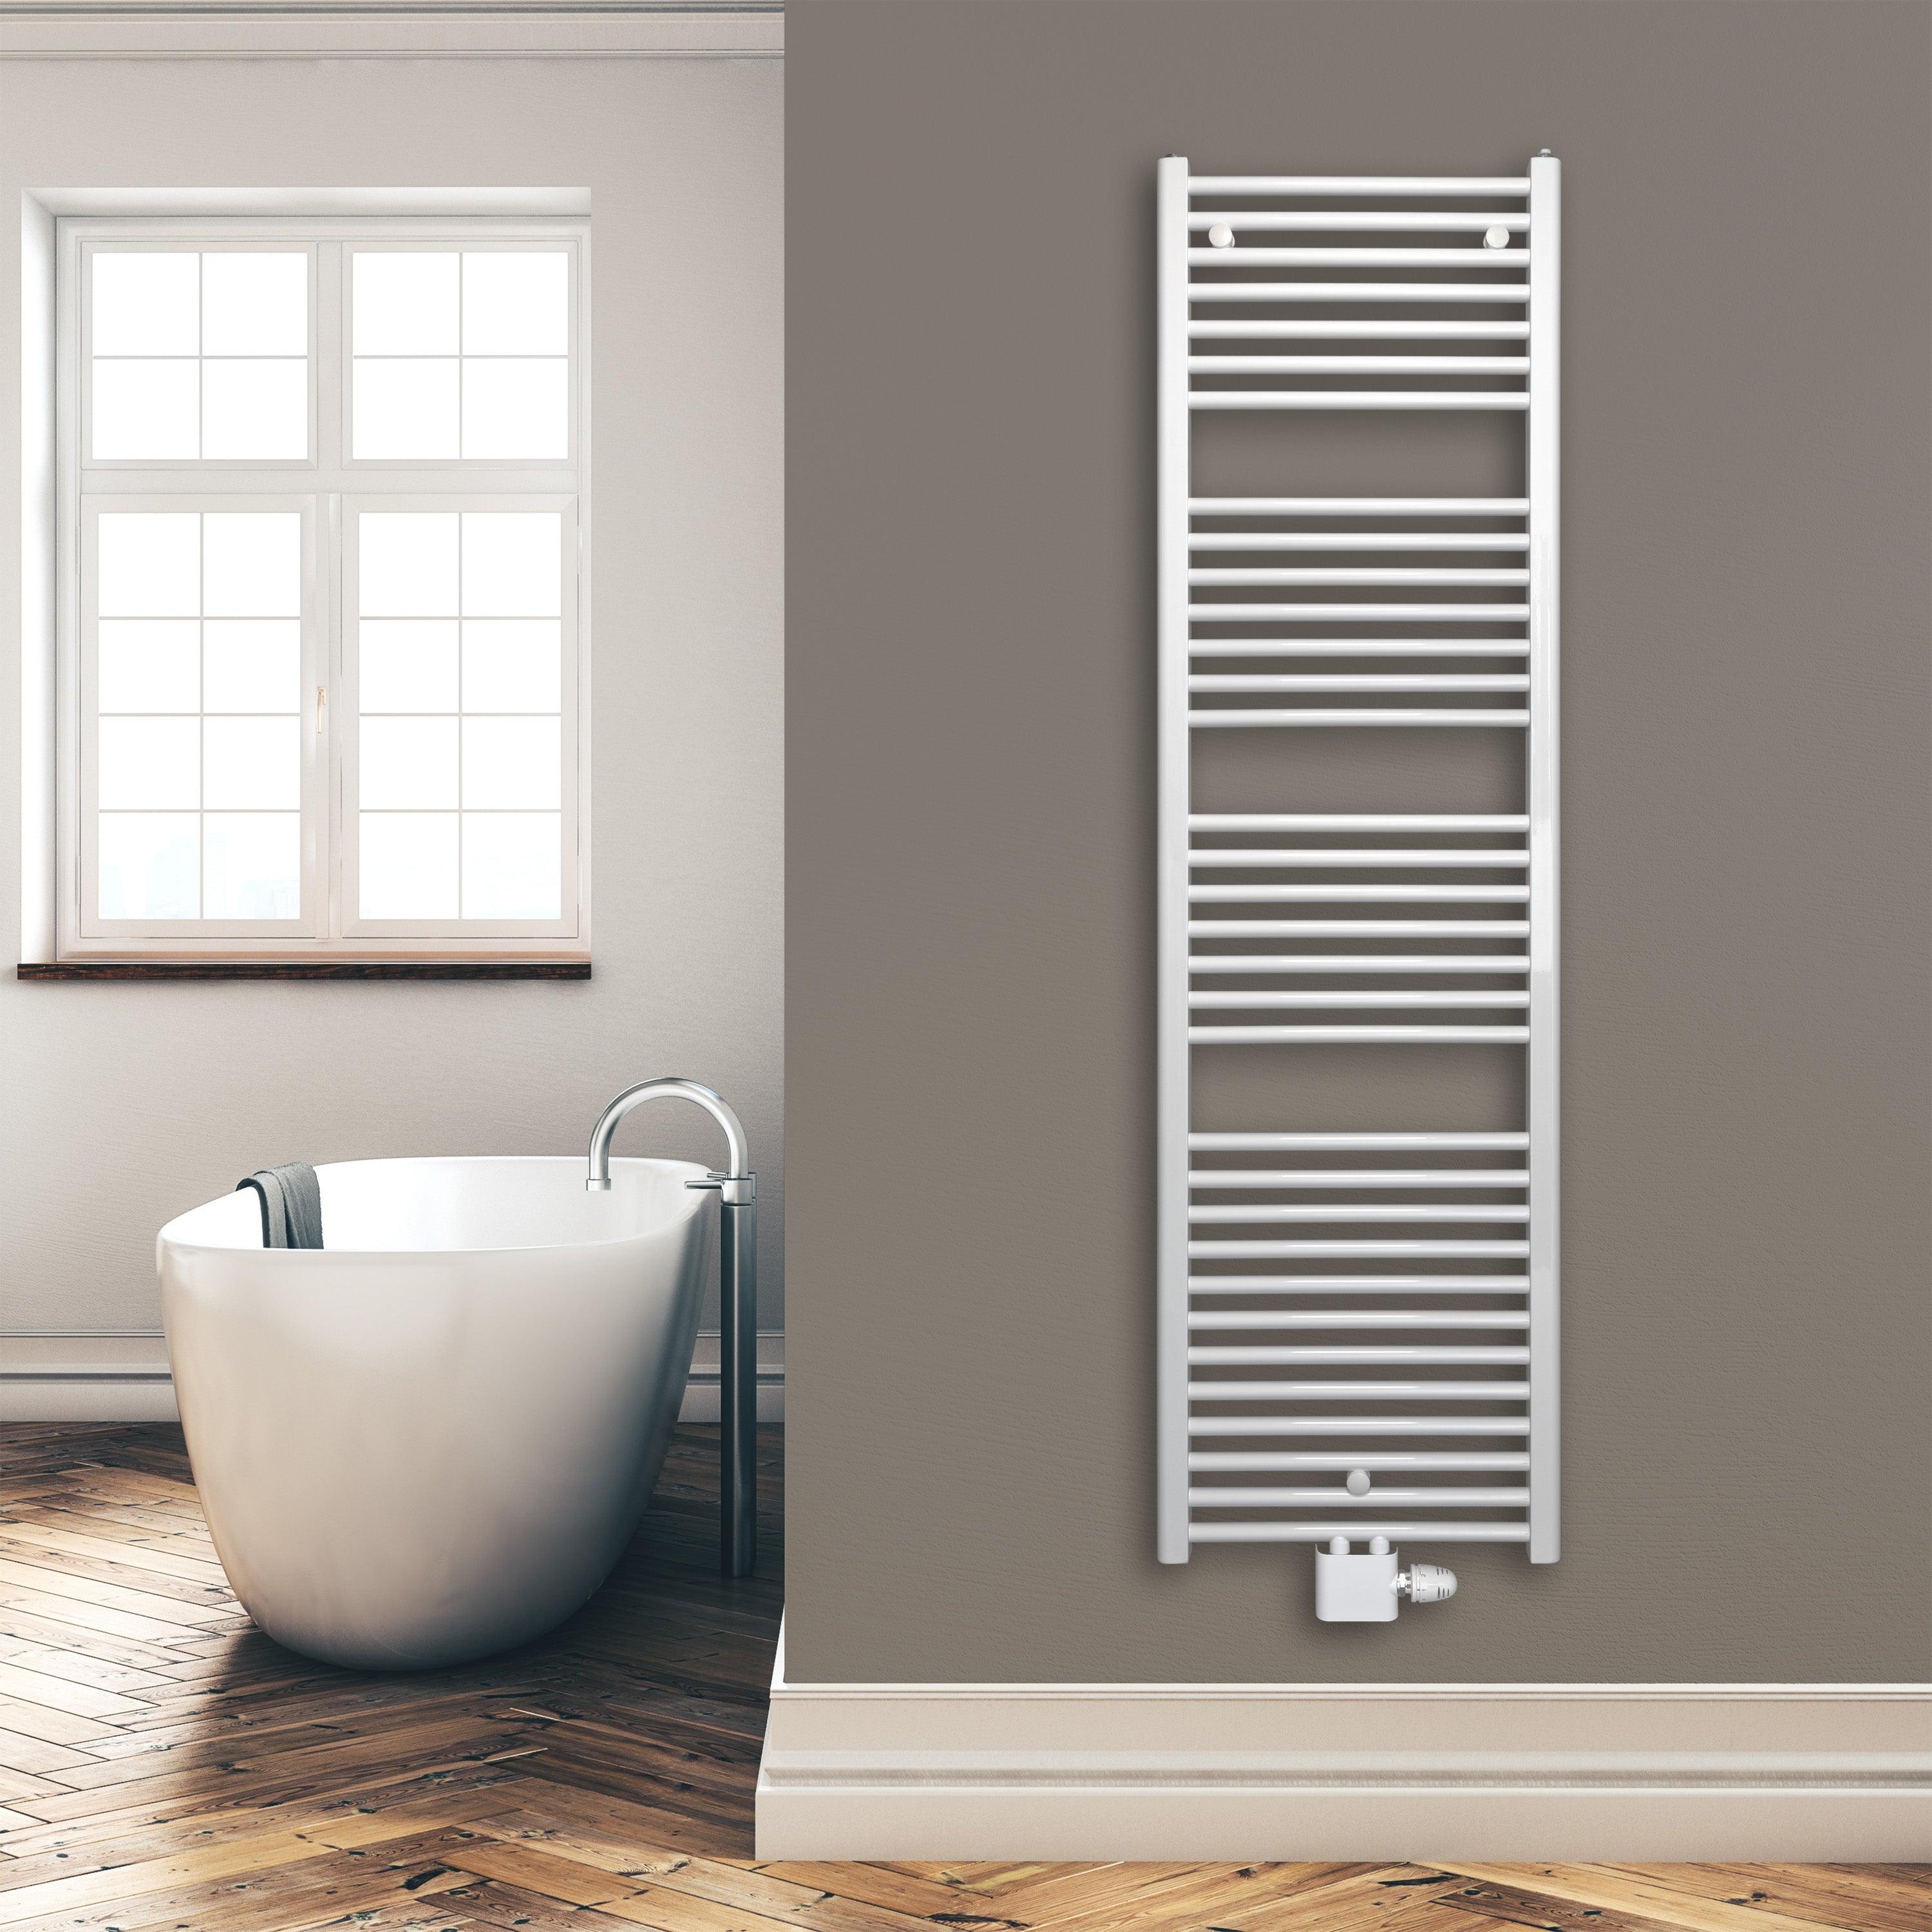 Badheizkörper 1732 x 500 mm gerade mit Mittenanschluss Handtuchhalter Badezimmer Heizung Handtuchwärmer weiß Montagebeispiel - heizkoerper.shop